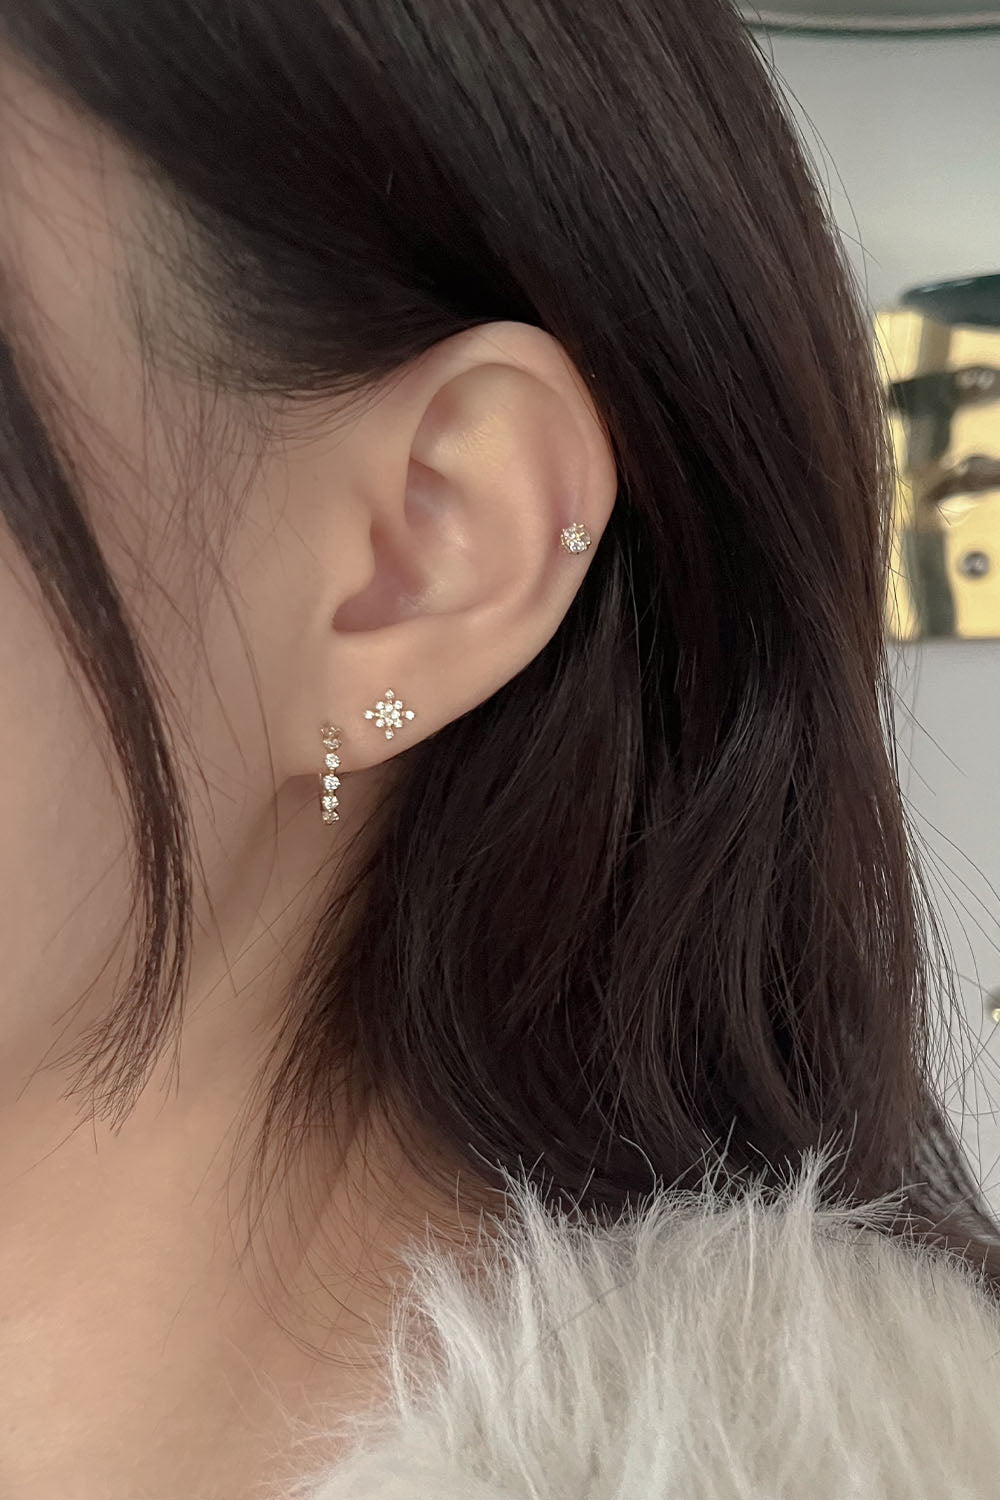 14k snowflake piercing earrings 21G